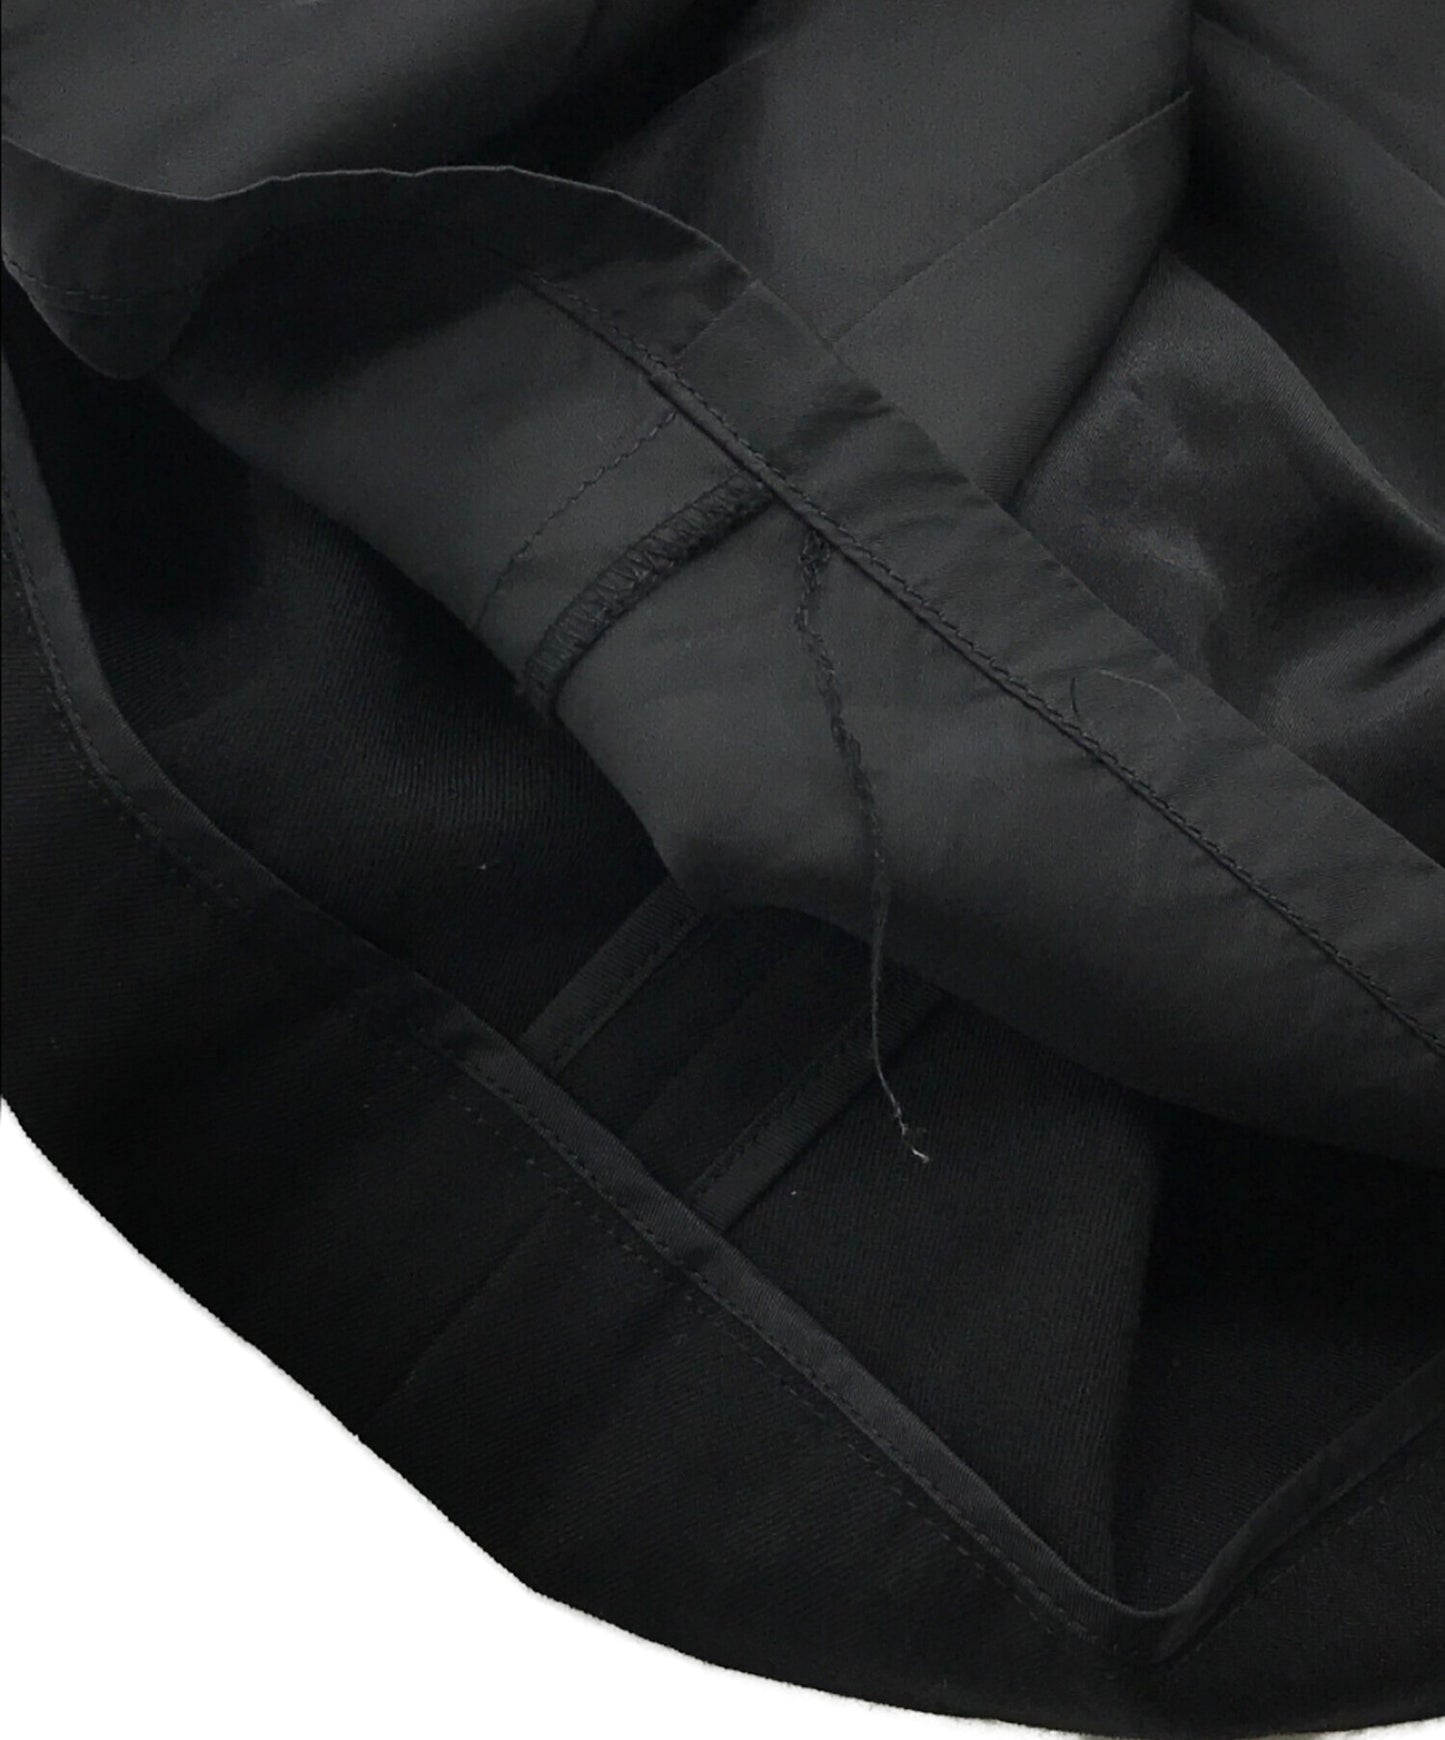 [Pre-owned] Y's Wool gabardine coat MS-C01-100